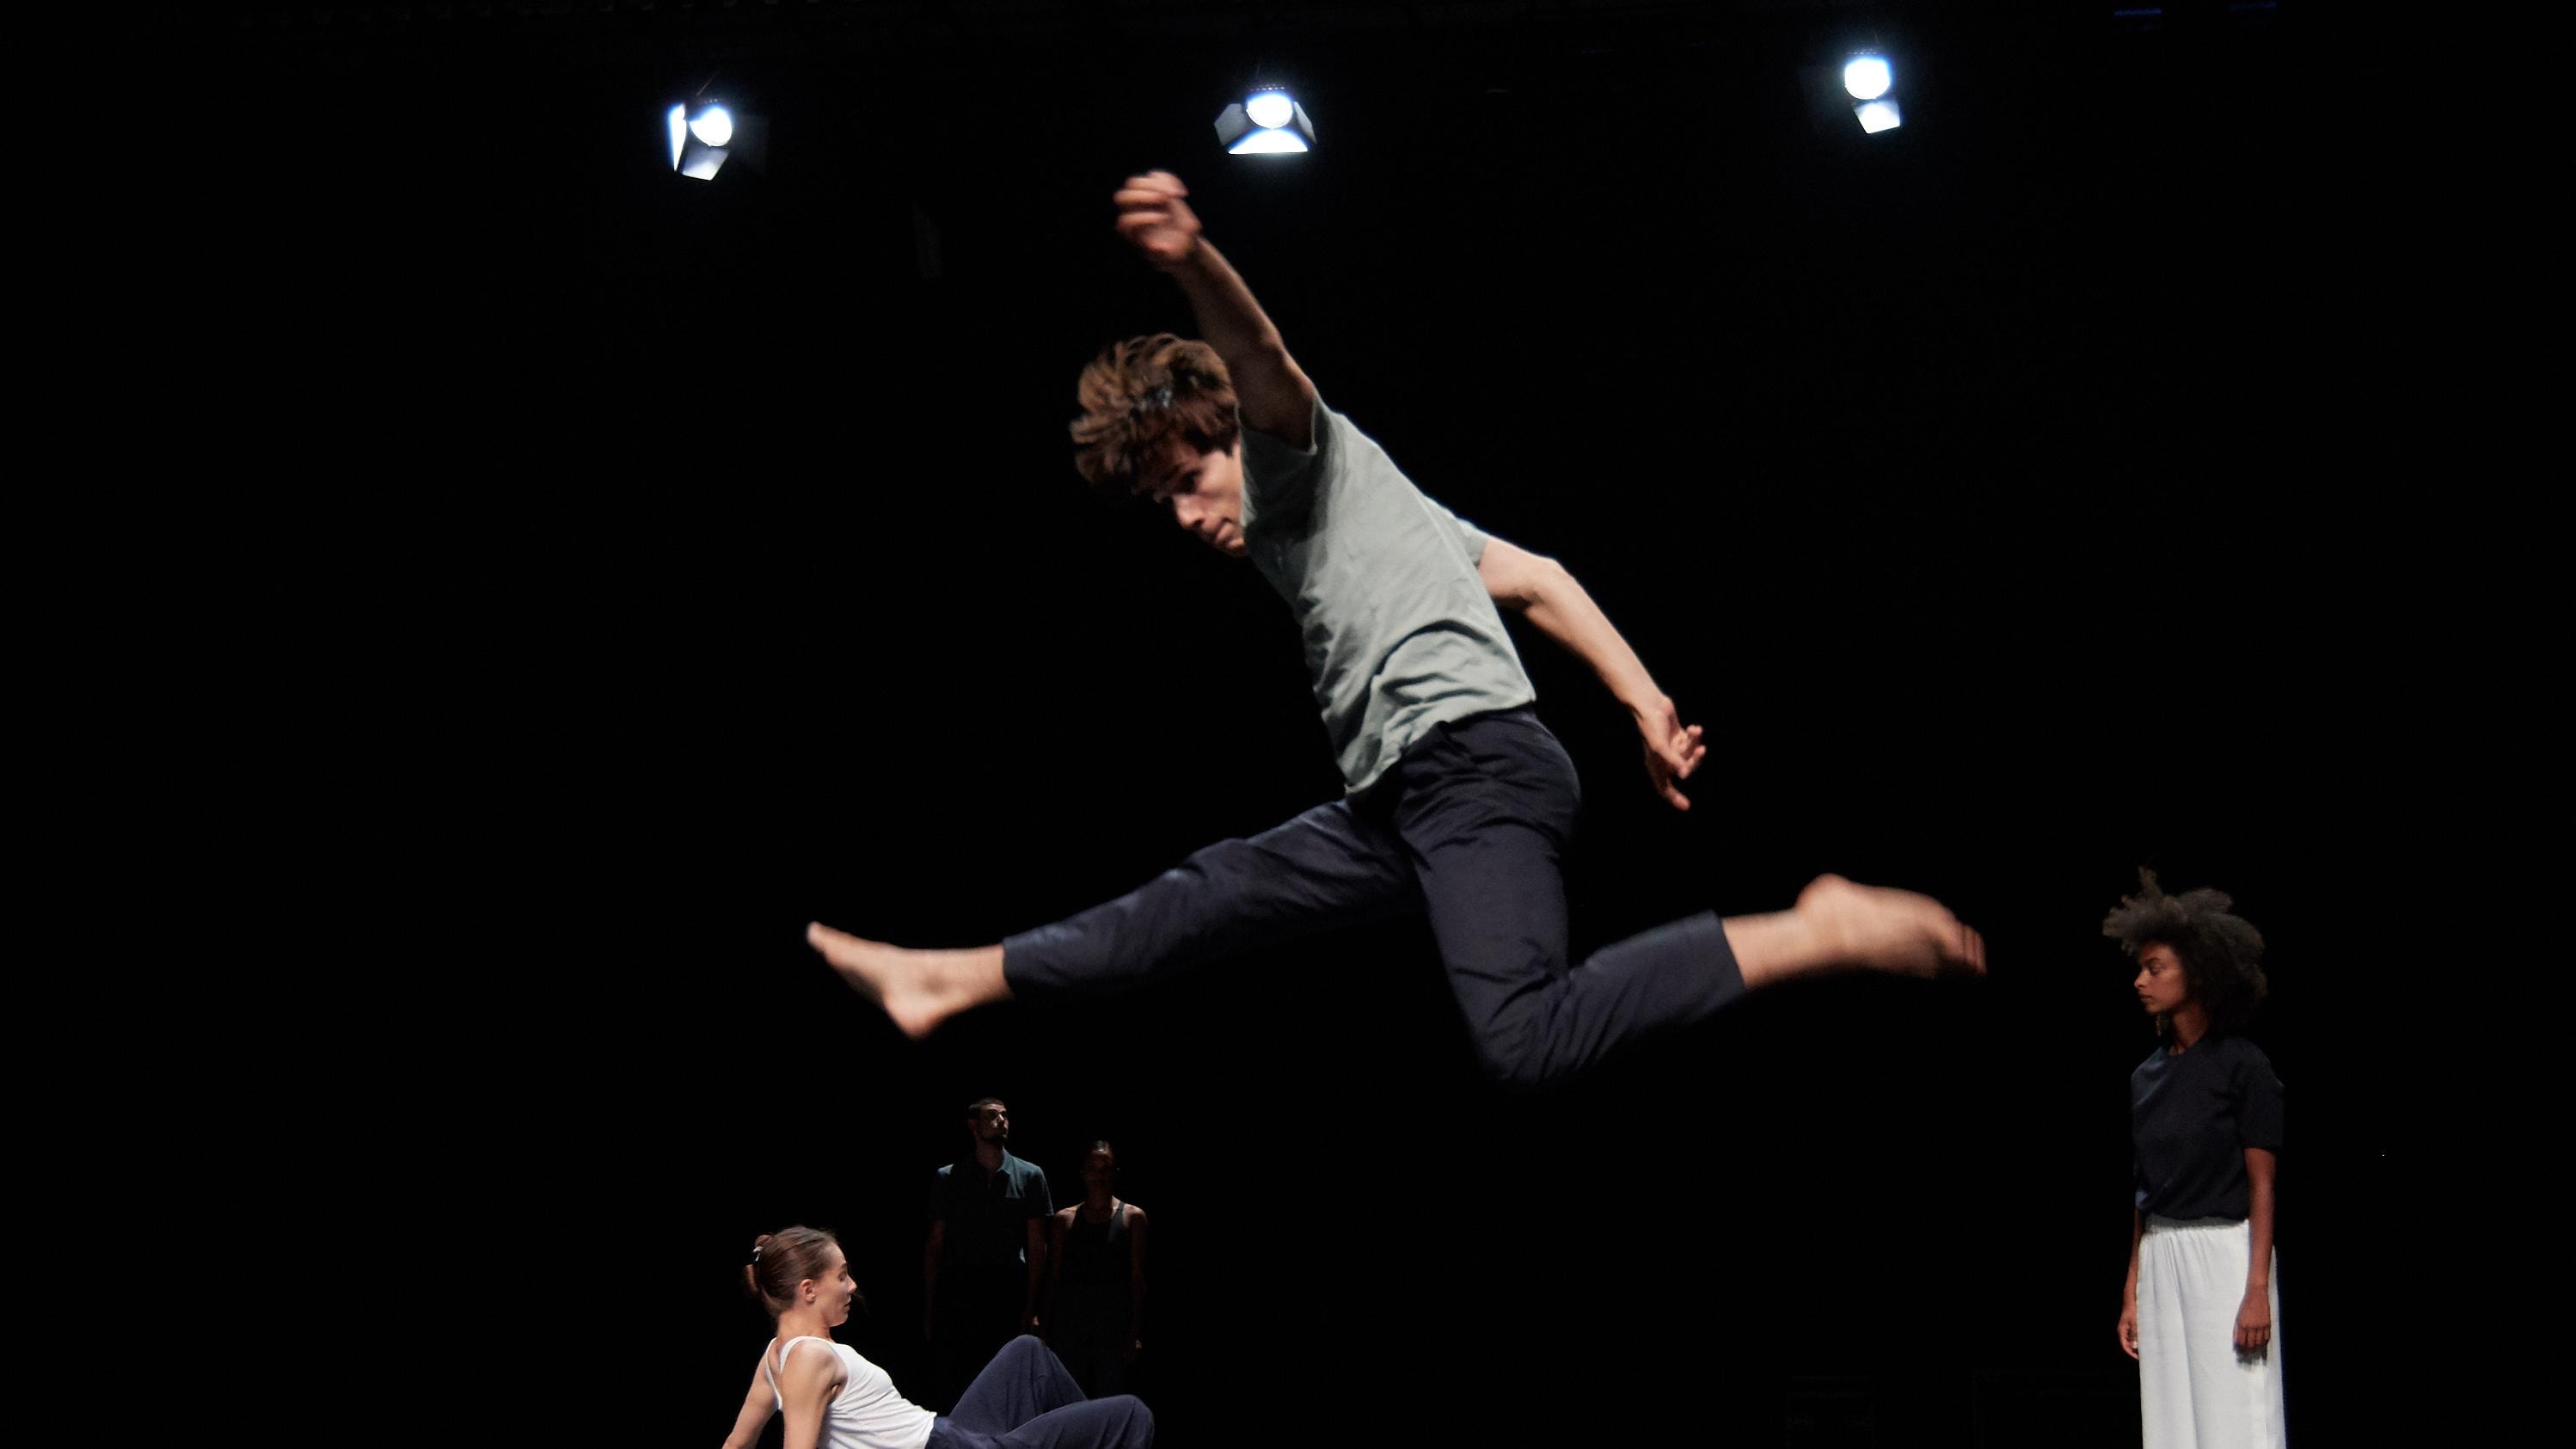 在空中跳跃的舞者。舞台背景中有另外两位舞者在舞蹈。